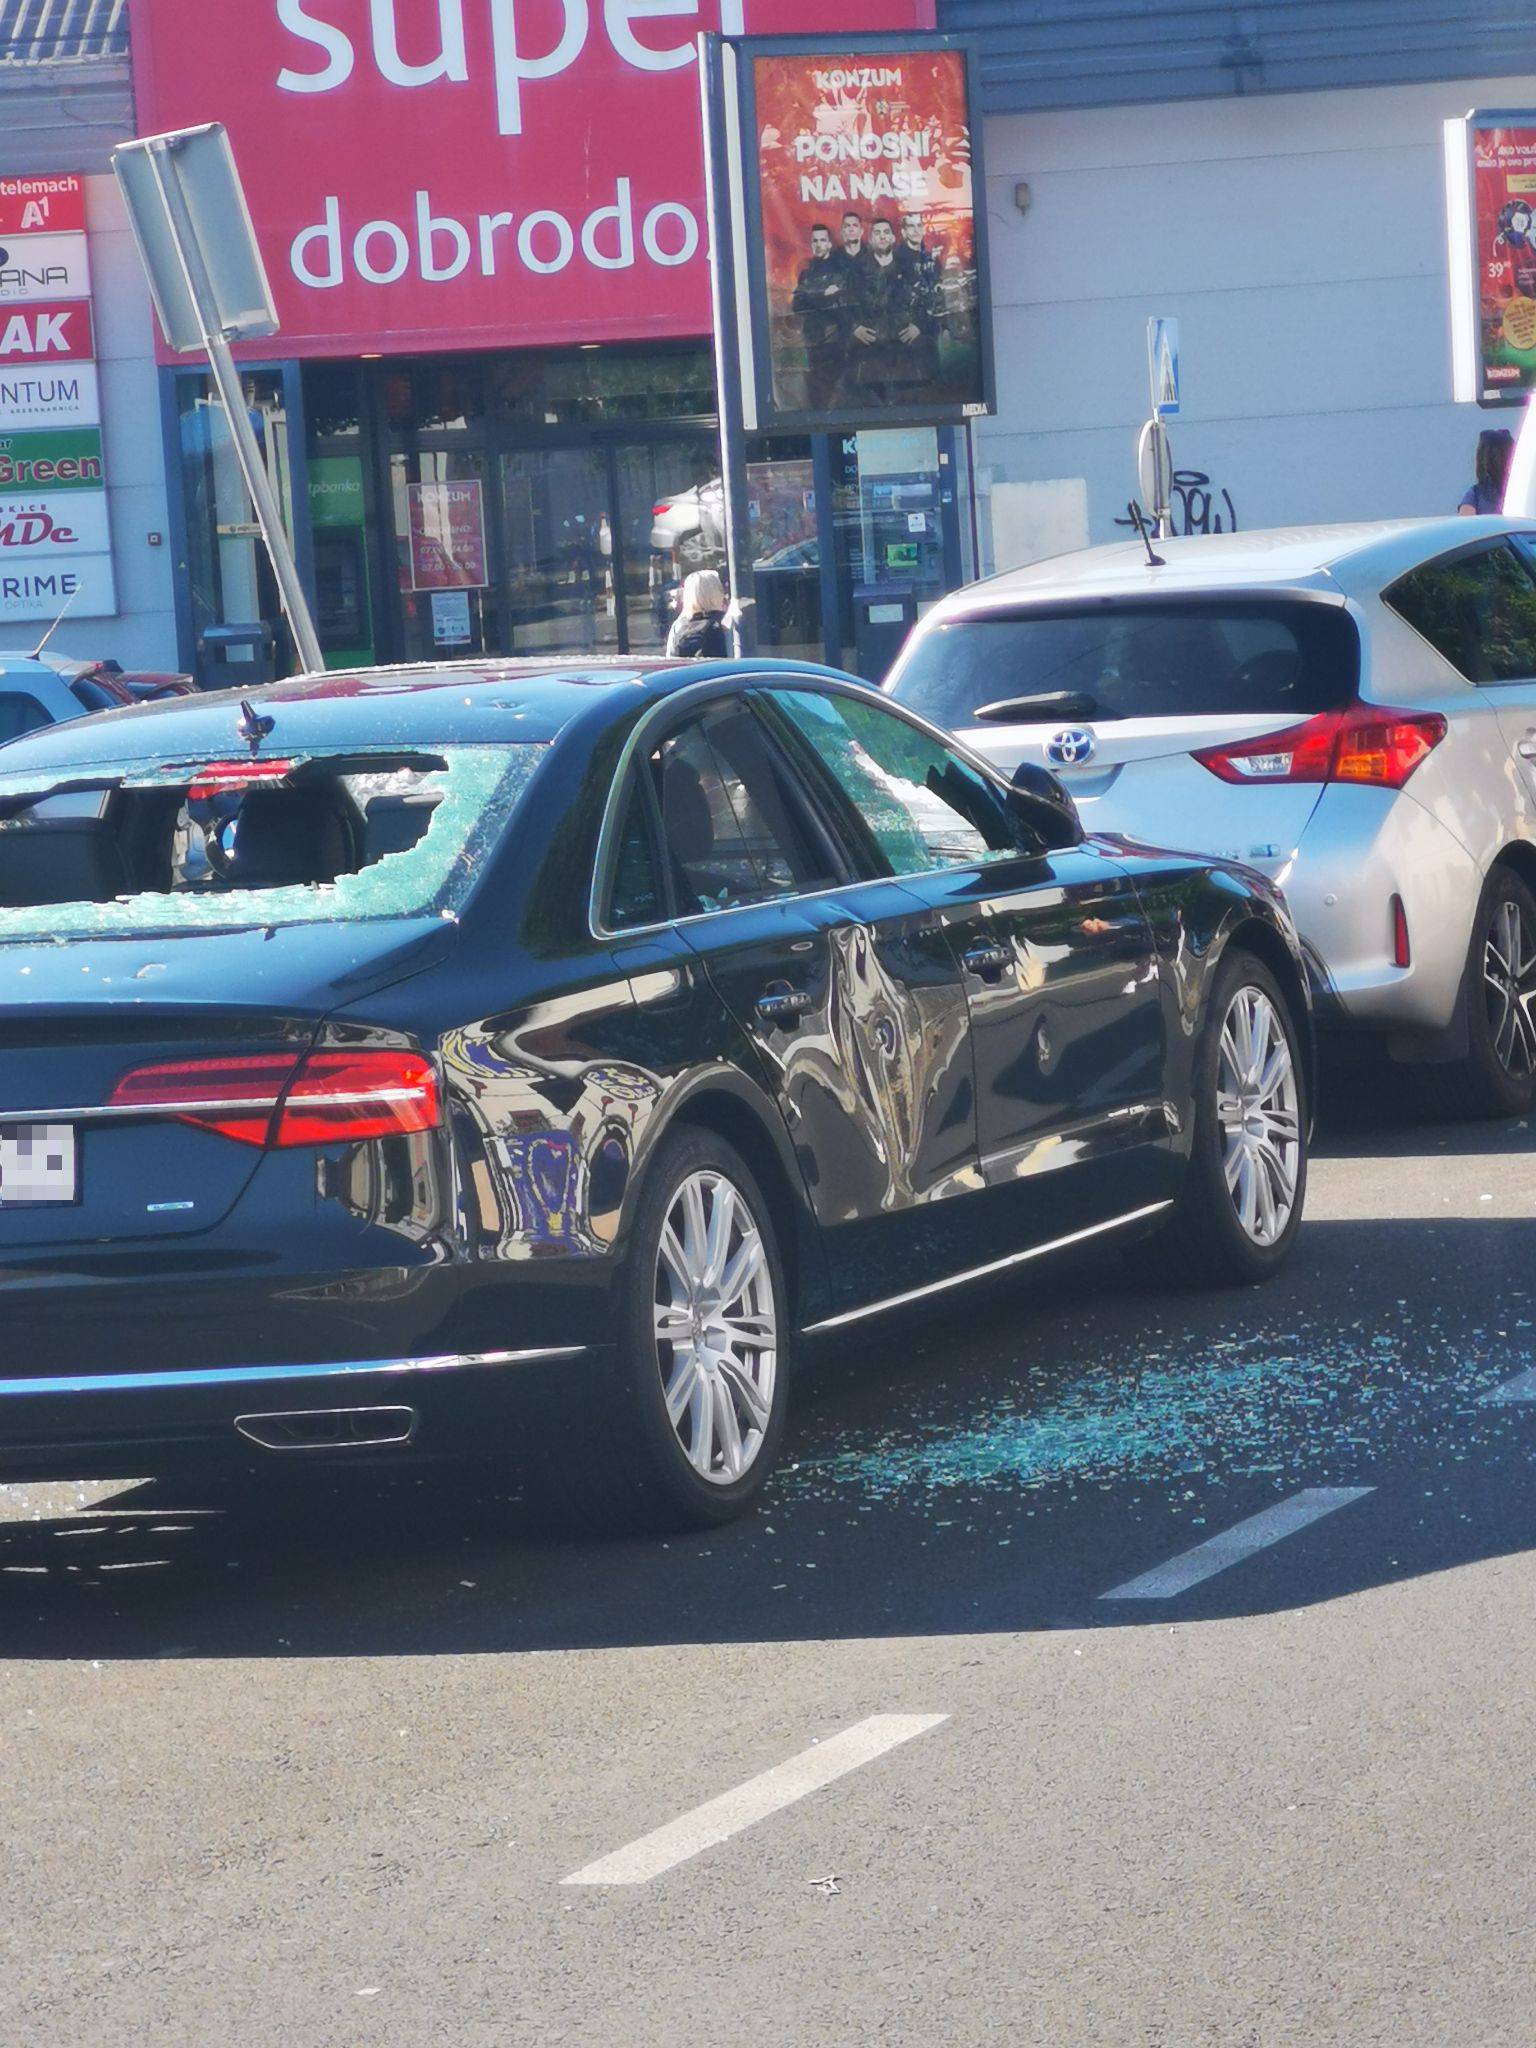 Sjekirom uništio Audi: 'Nosio ju je preko ramena, počeo udarati, pa nazvao policiju i pričekao ih'